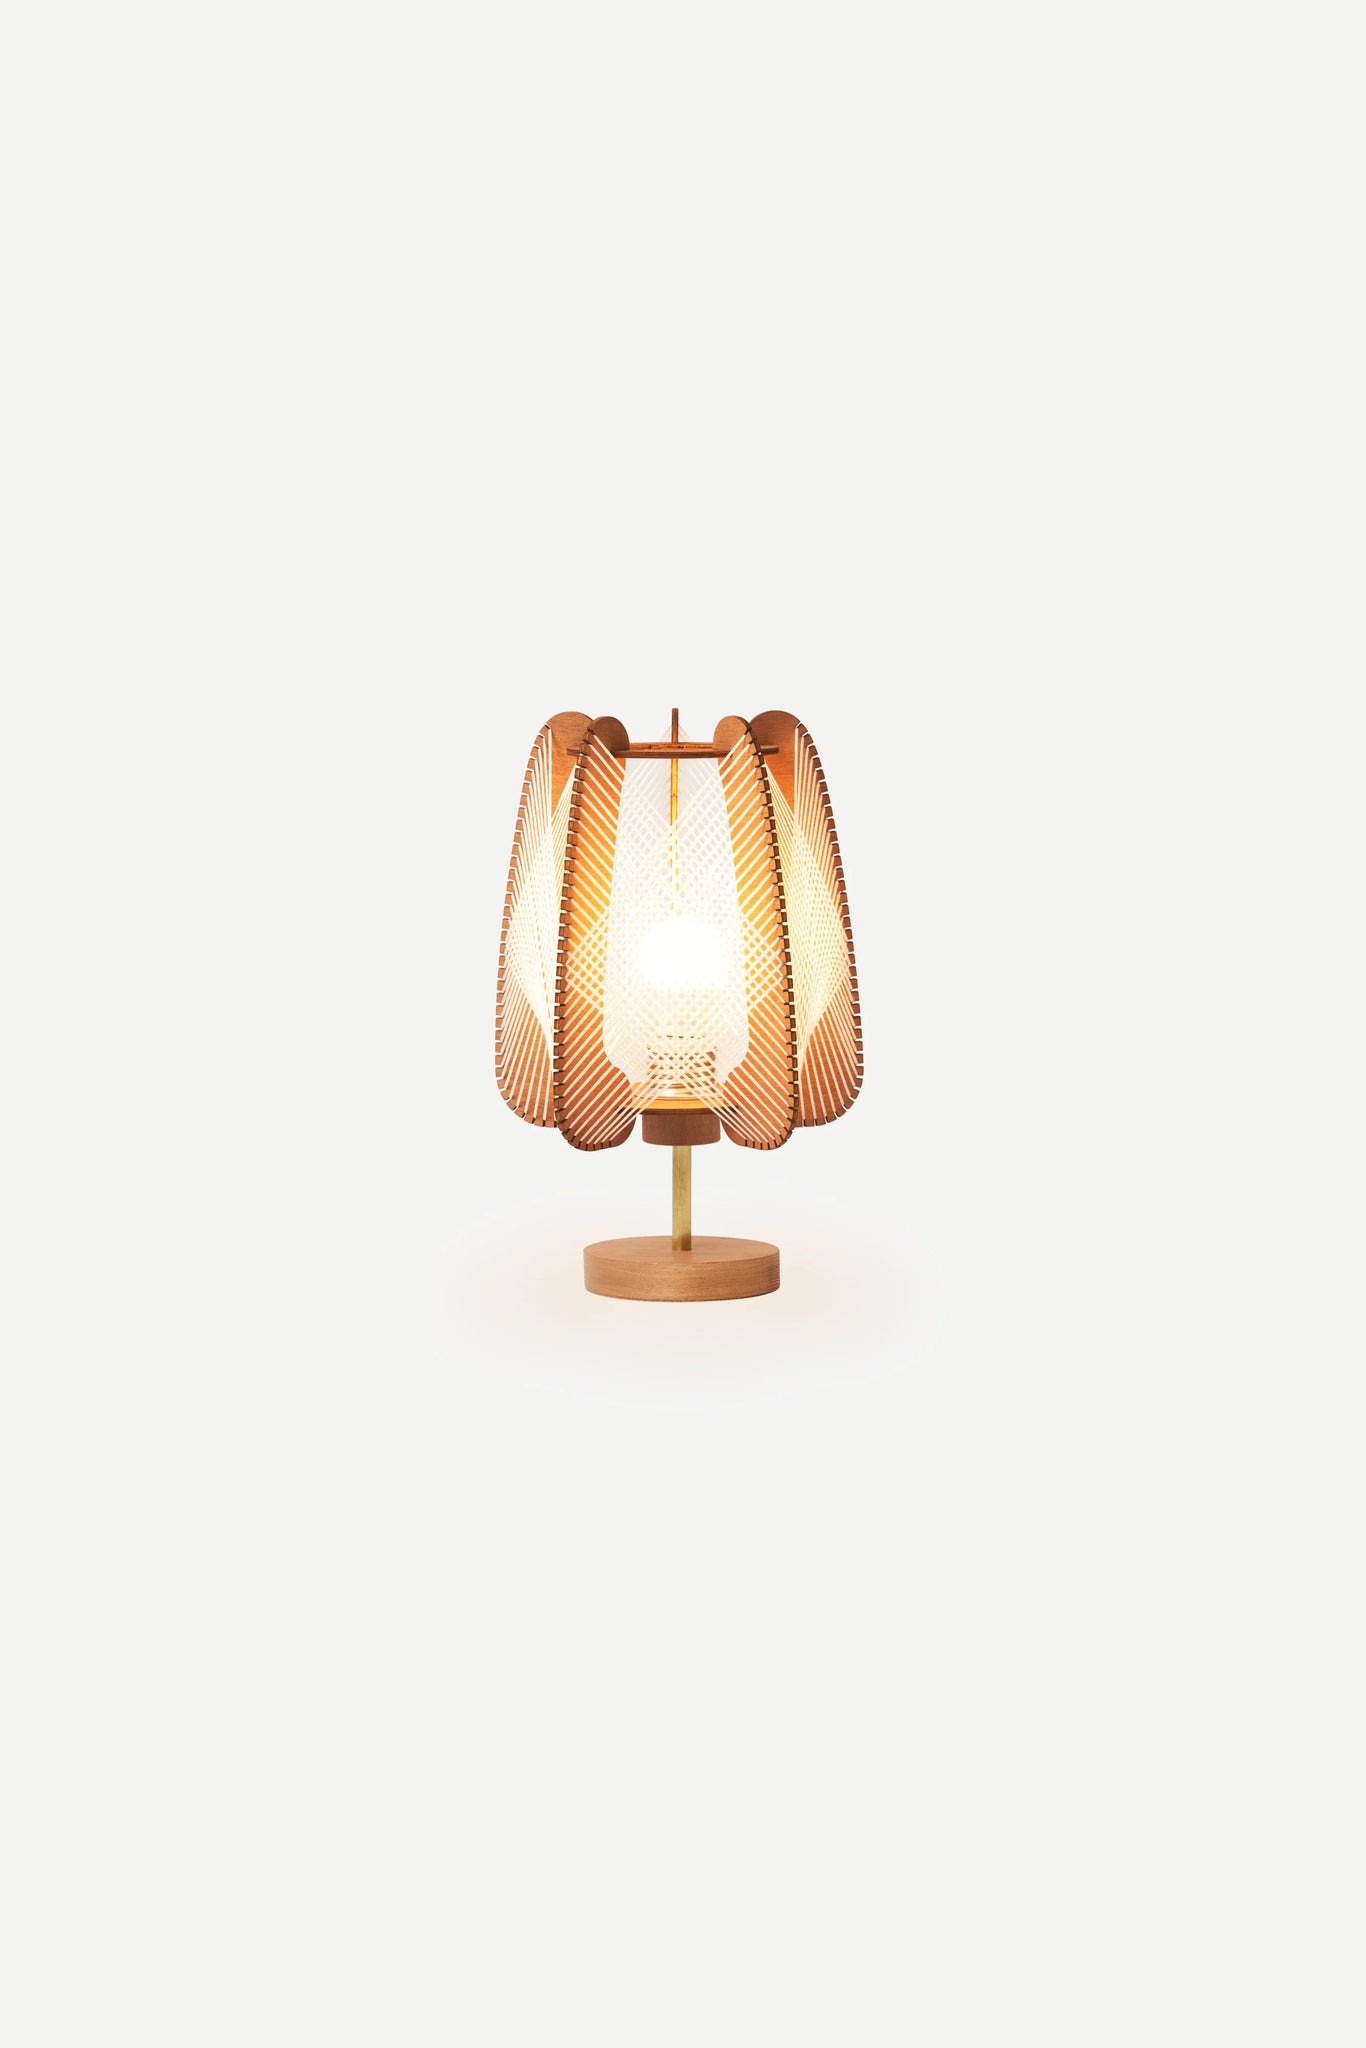 LAFABLIGHT "ARIOCA / QADRO TABLE LAMP"